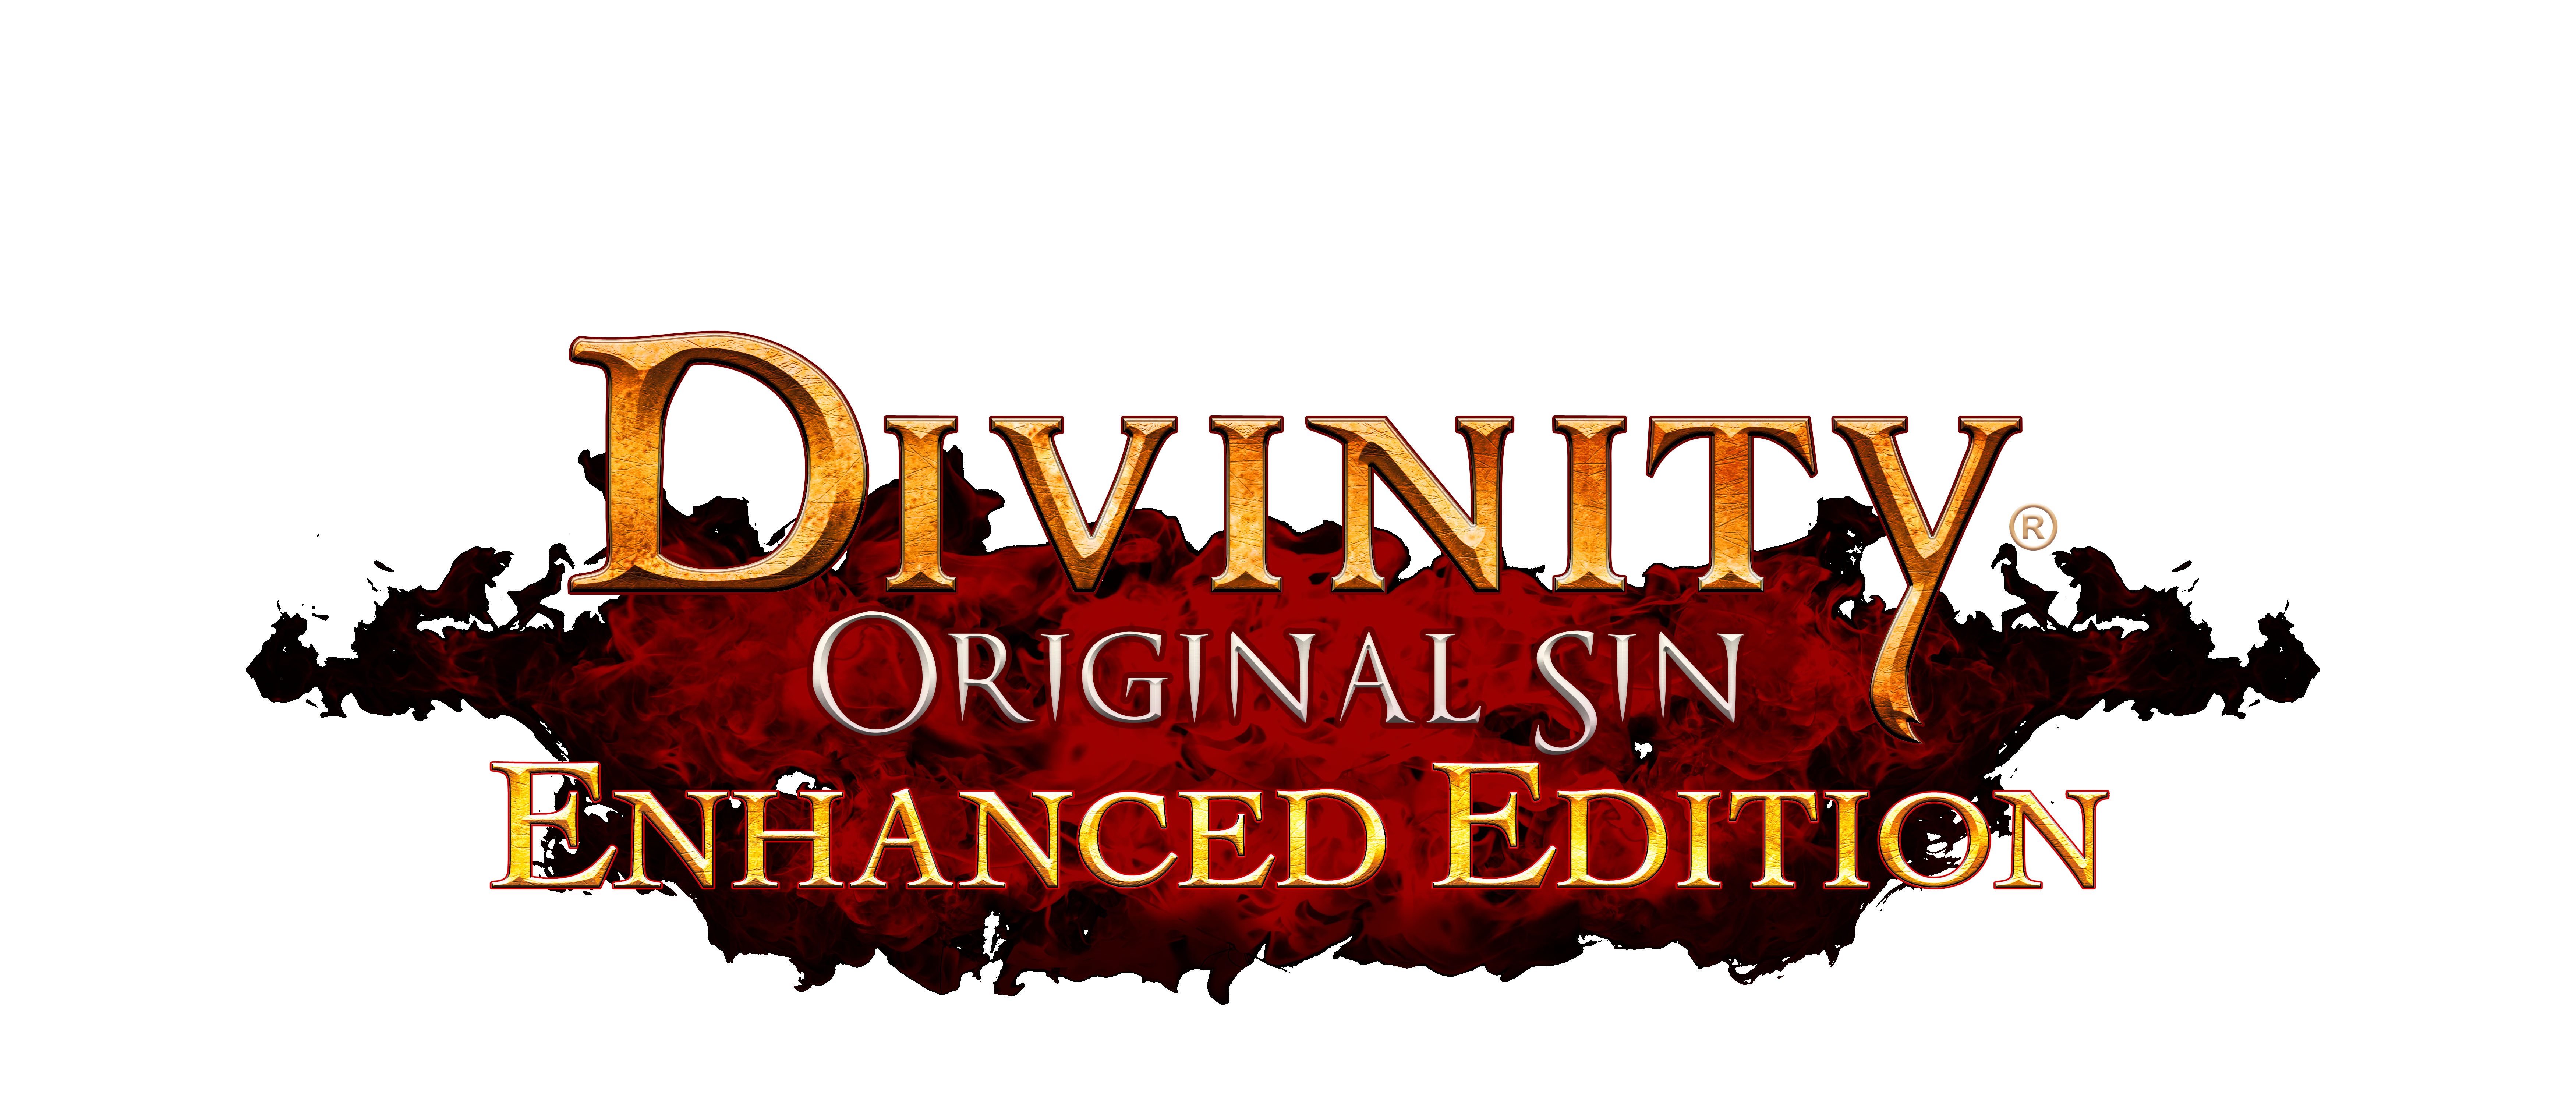 Divinity Original Sin PNG - 13099